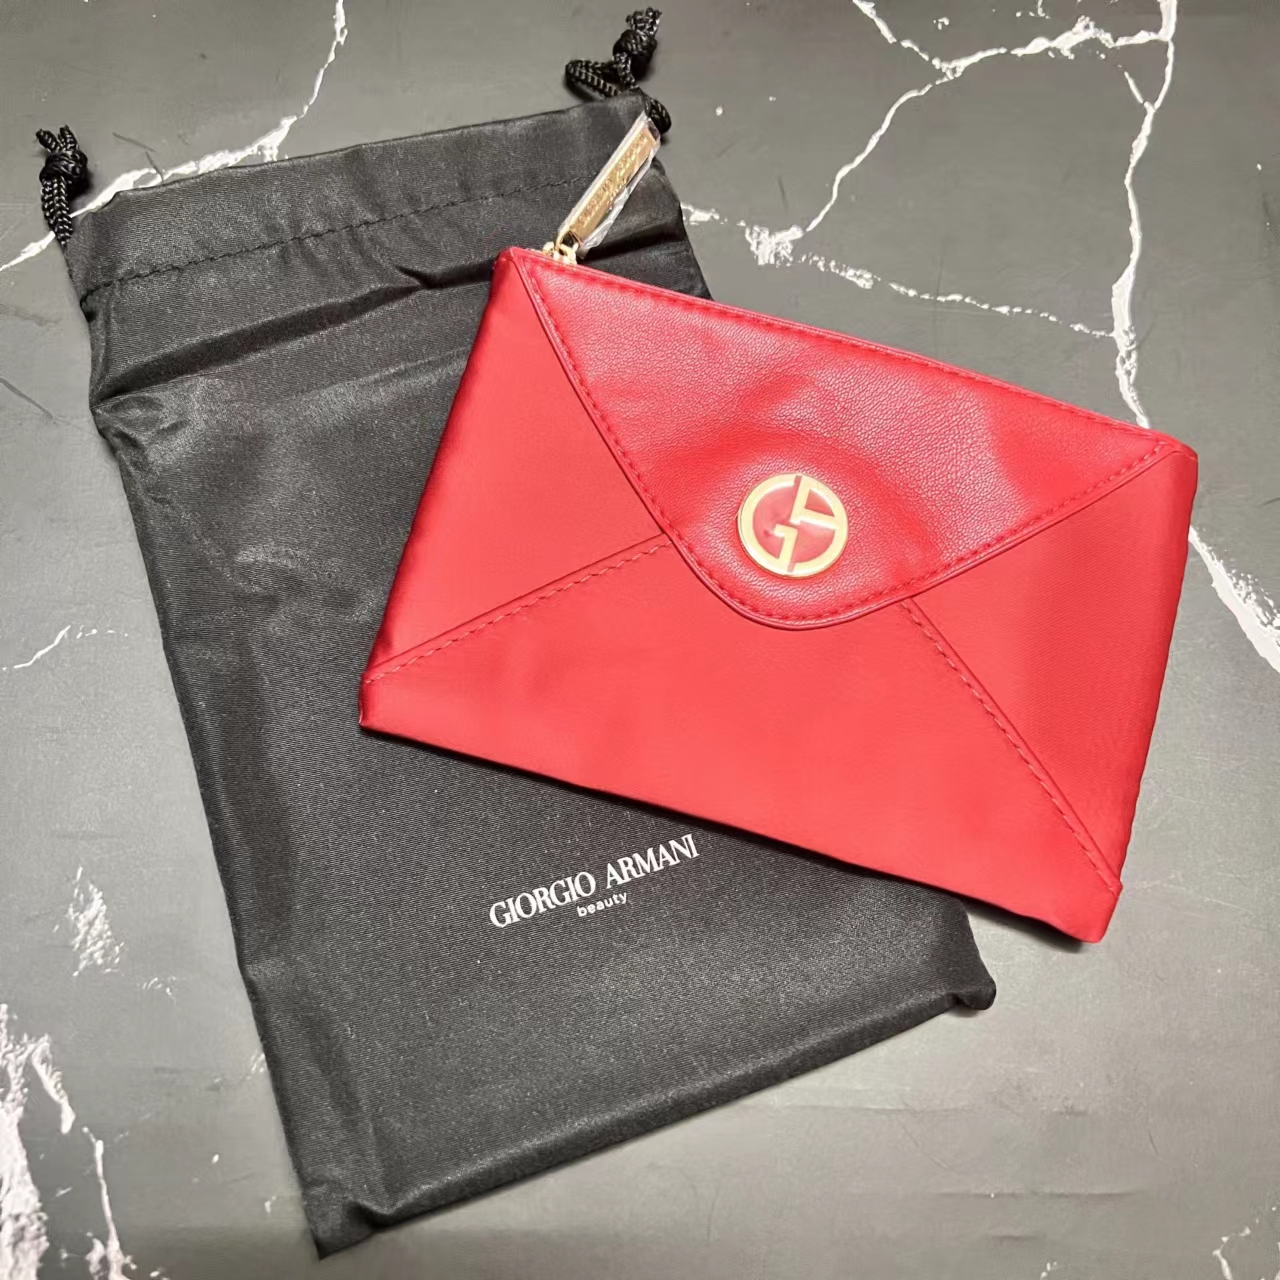 Giorgio Armani Beauty Red Premium Pouch | Lazada Singapore